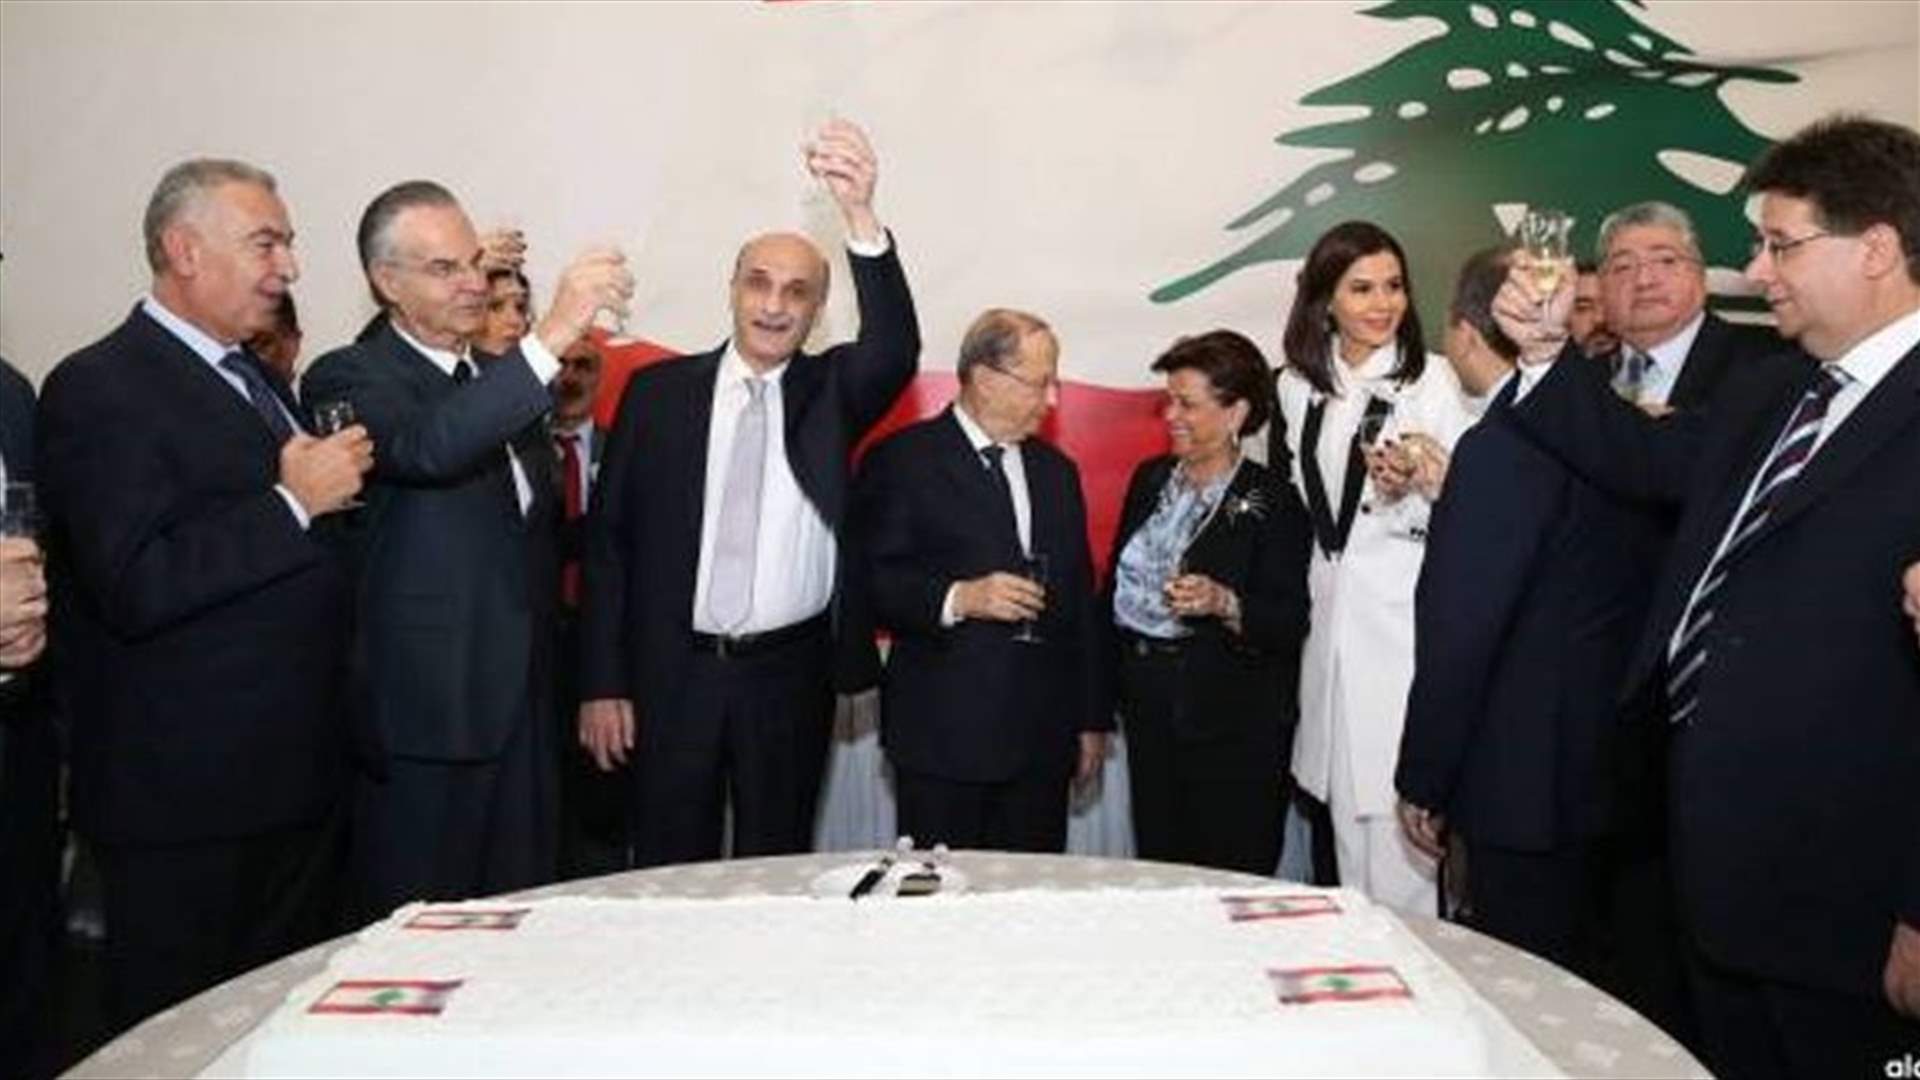 [PHOTOS] LBCI obtains full copy of Maarab agreement